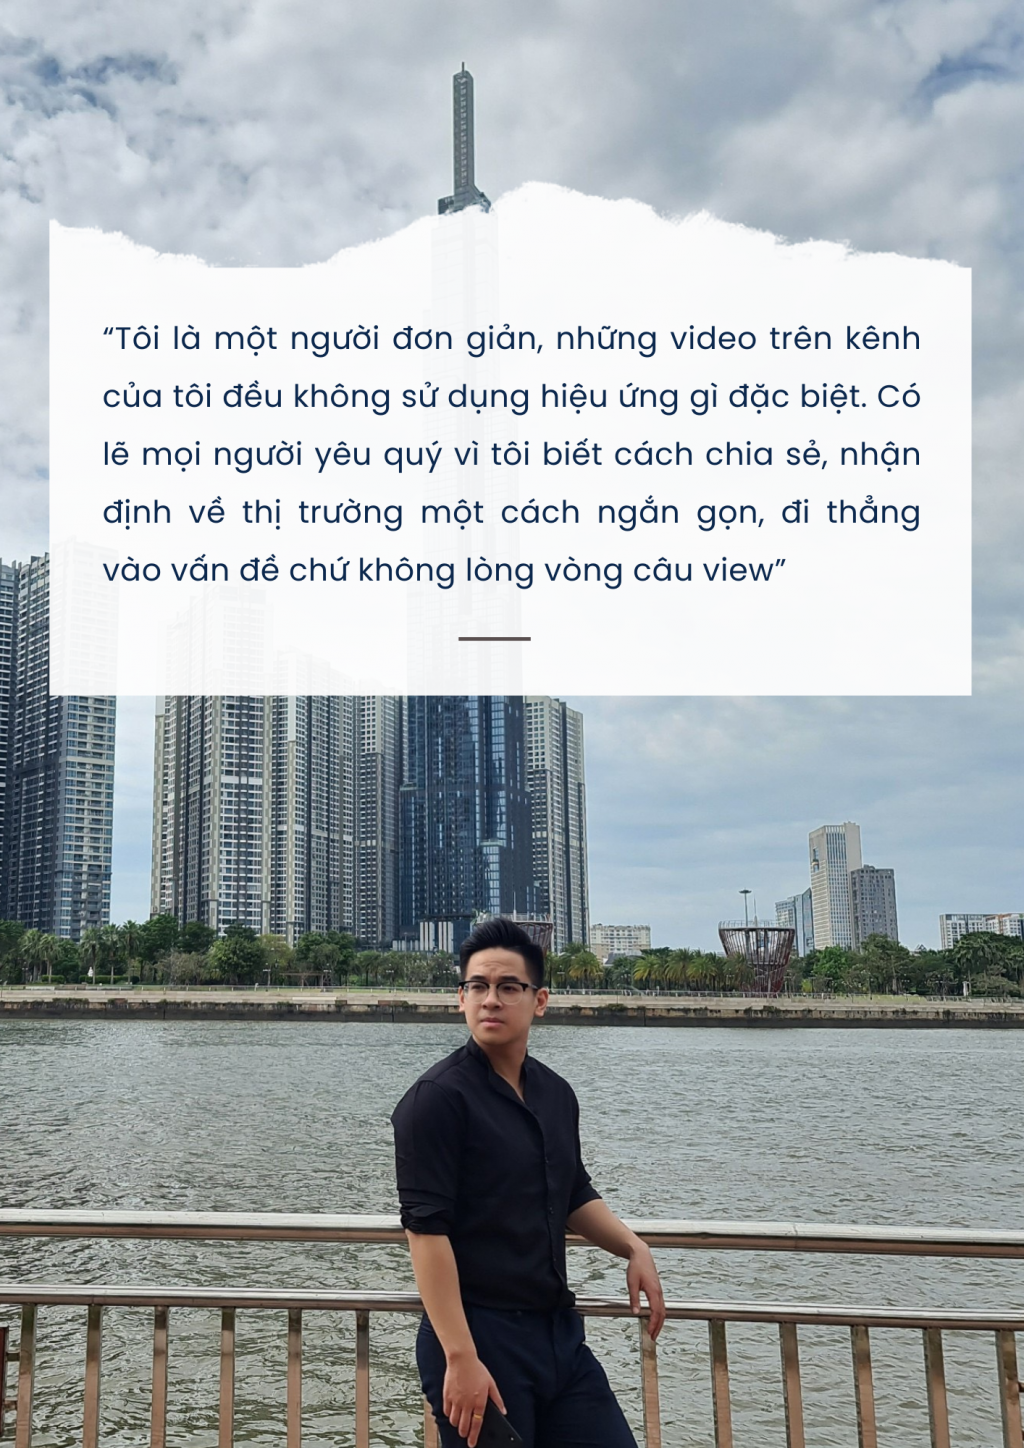 Broker Nguyễn Gia Khánh: "Làm môi giới chứng khoán, thứ mất đi không chỉ là sức khỏe"